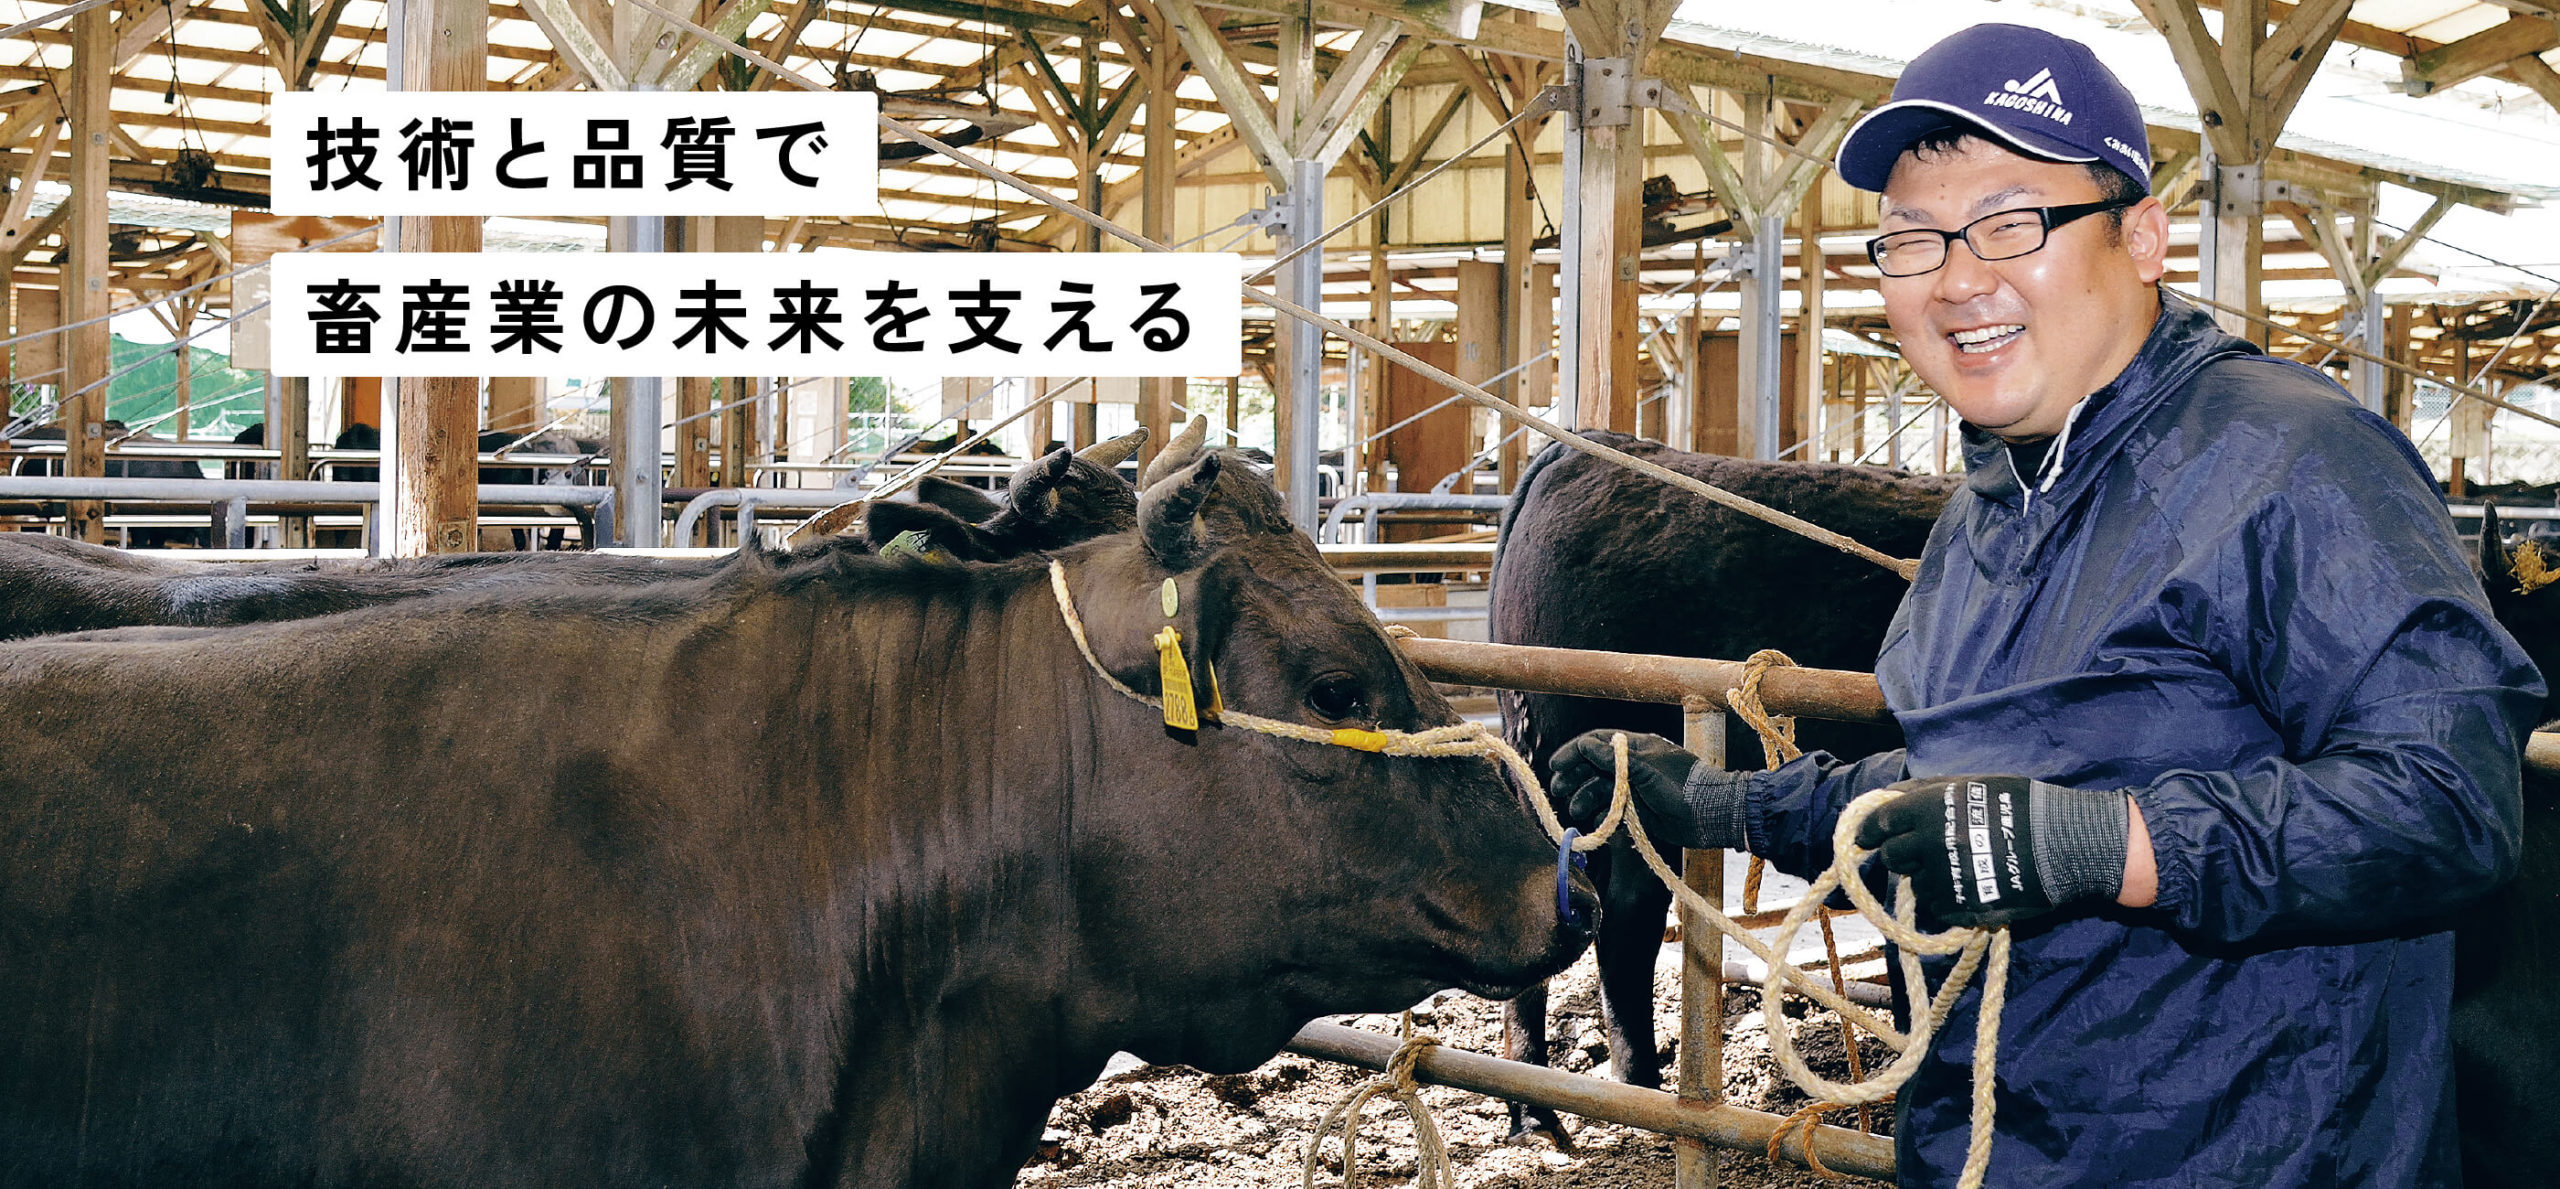 技術と品質で畜産業の未来を支える